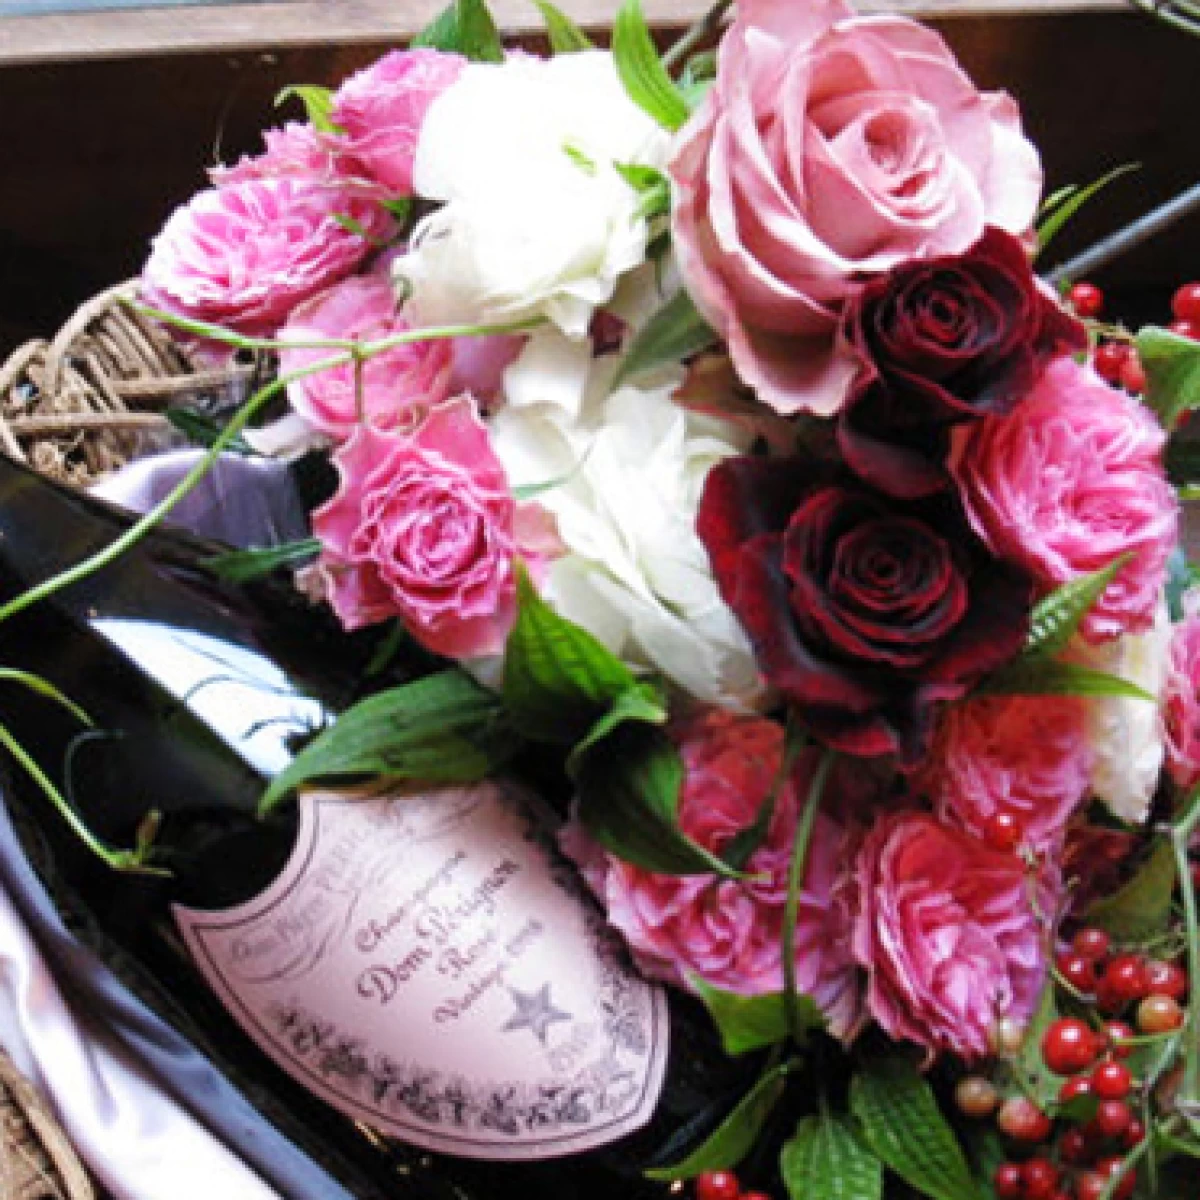 結婚祝い 誕生日祝い[ワイン 生花 ギフト]シャンパンの女王ドンペリ ロゼ(ピンドン)とお花のプレミアムセット